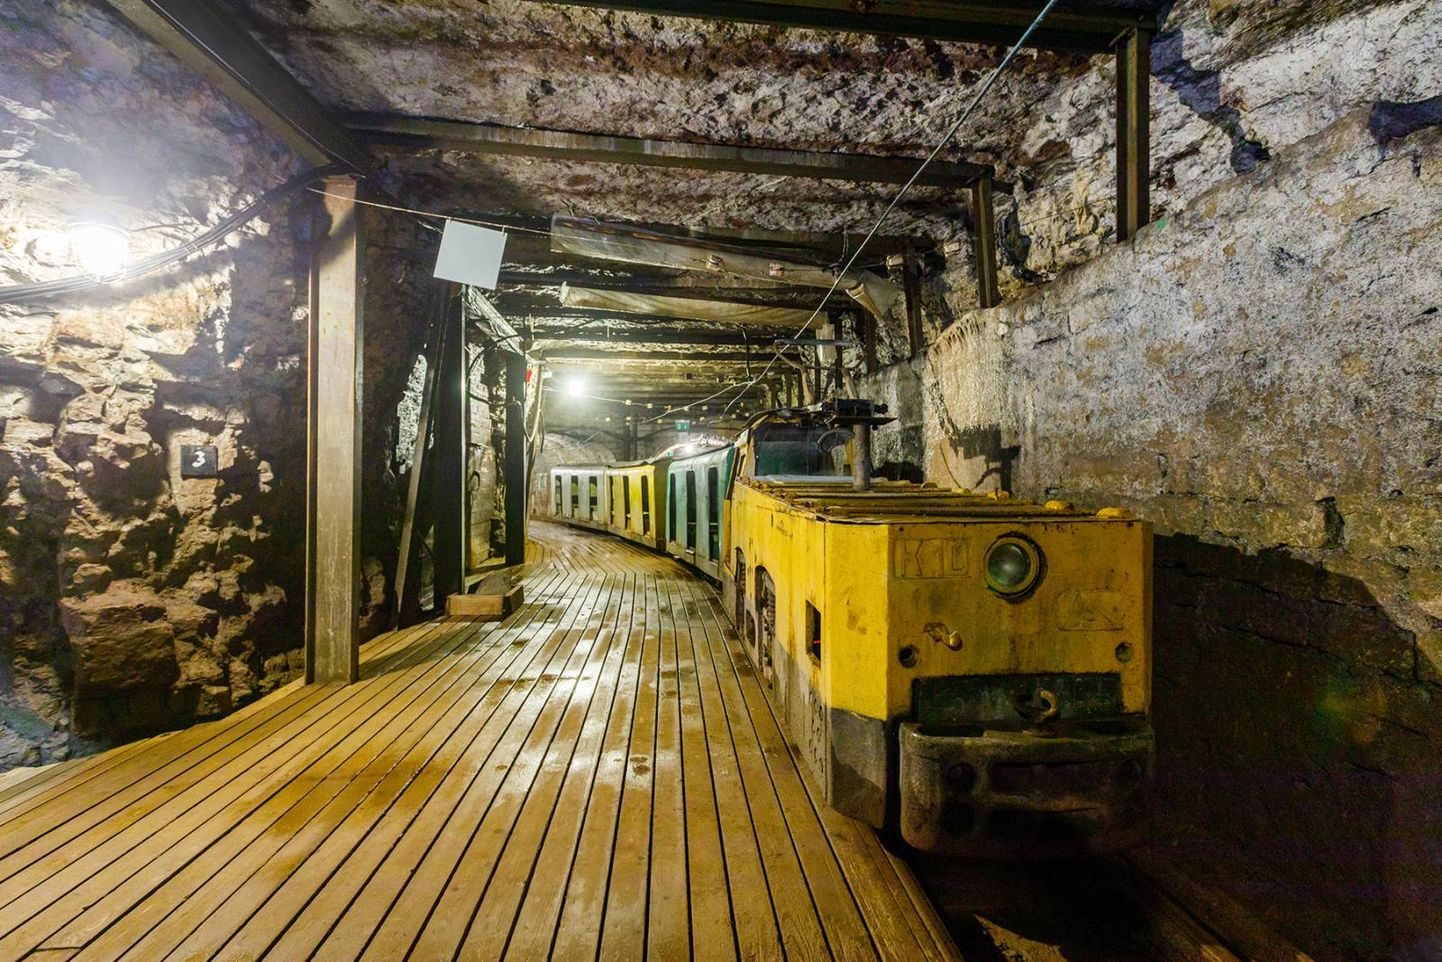 Kaevandusmuuseumis Kohtla-Nõmmel algab muuseumiöö juba päeval, kui huvilised pääsevad eelneva broneerimise korral eksklusiivsele tuurile pimedatesse kaevanduskäikudesse.